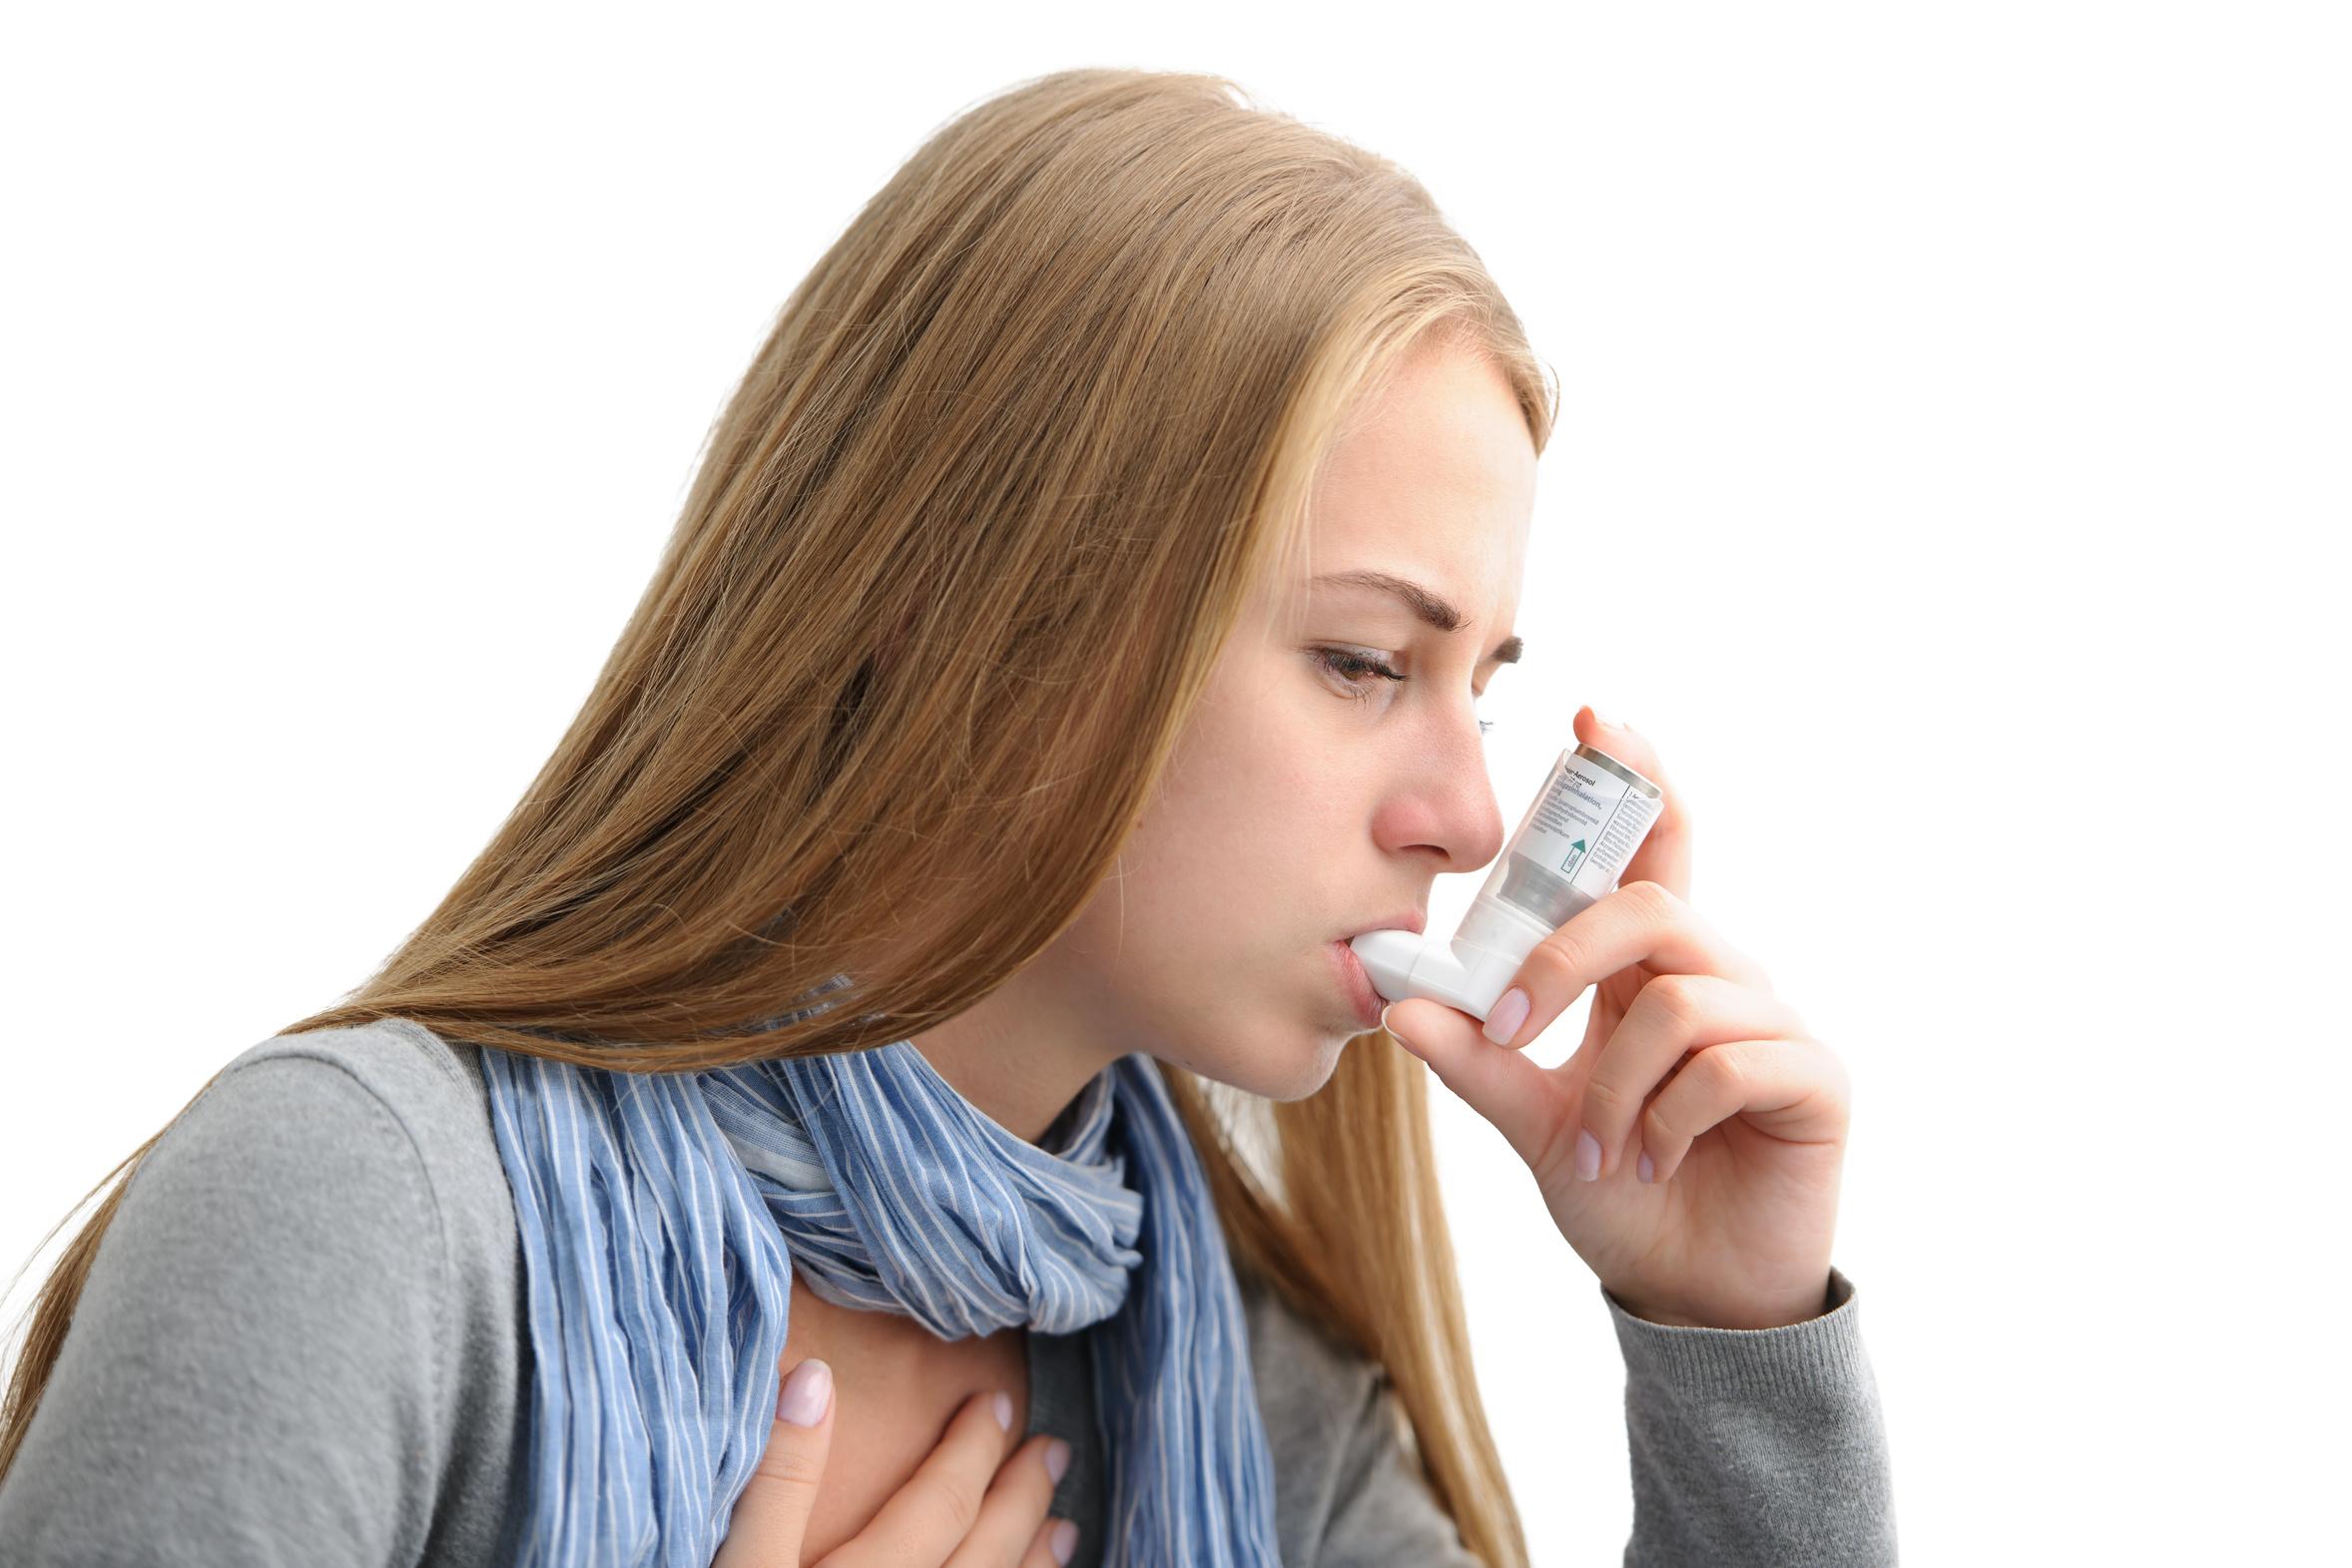 Alergijsku astmu karakteriziraju kašalj, stezanje u grudima, otežano disanje - Avaz